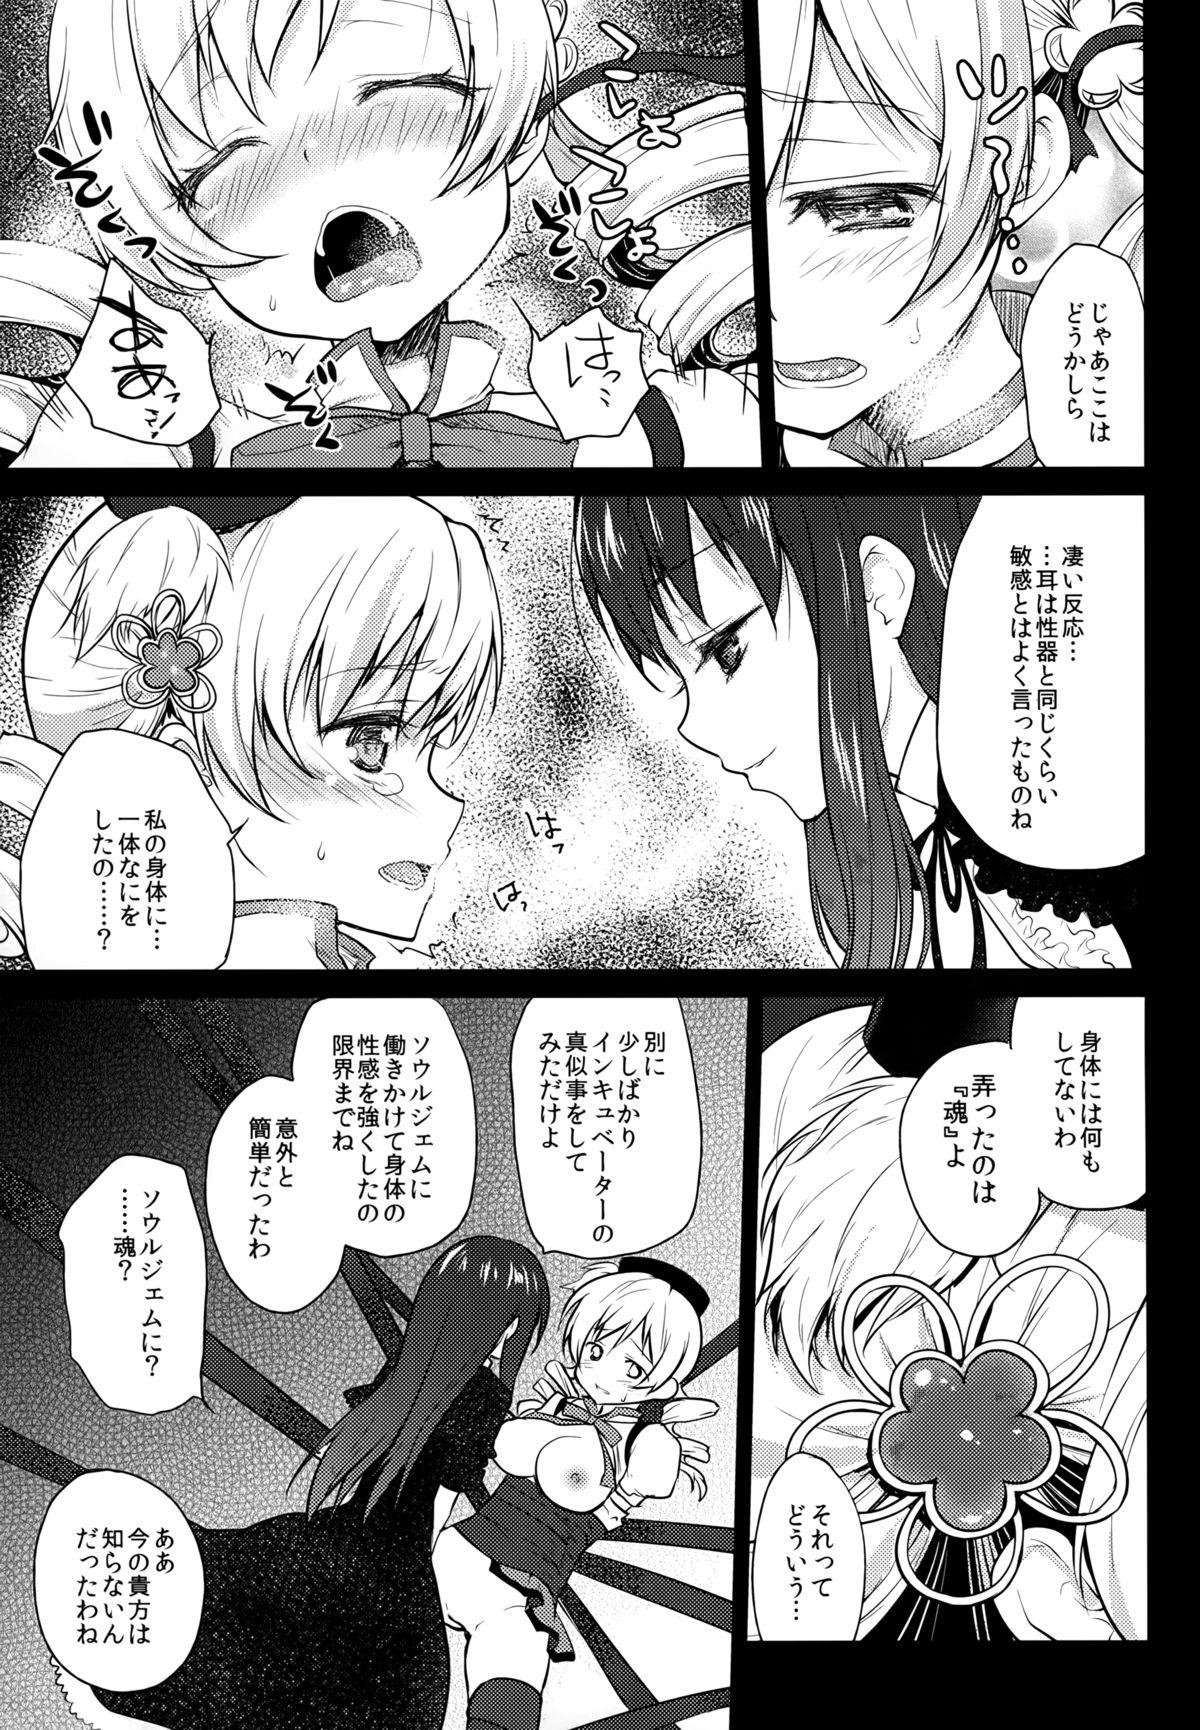 Punk Hitoribocchi wa Sabishii Mono ne - Puella magi madoka magica Humiliation - Page 11